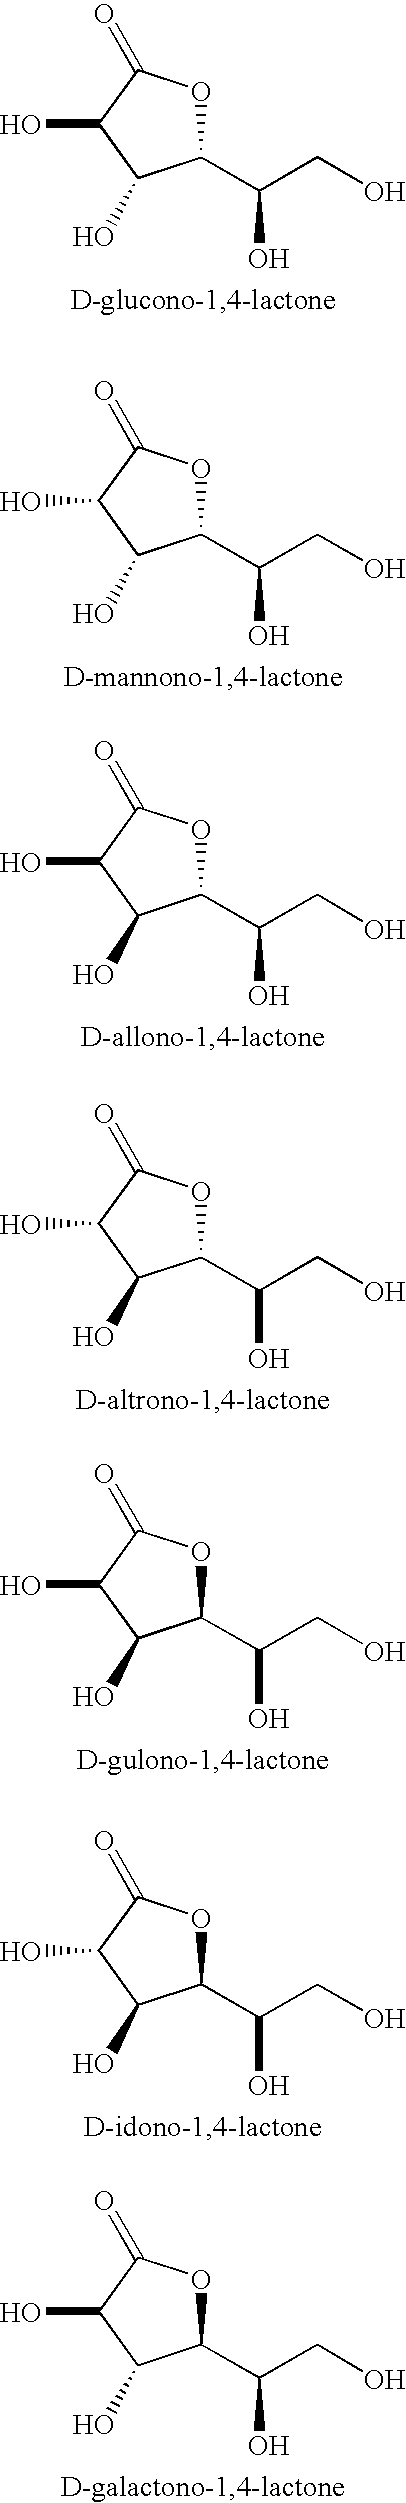 Synthesis of aldonolactones, aldarolactones, and aldarodilactones using azeotropic distillation